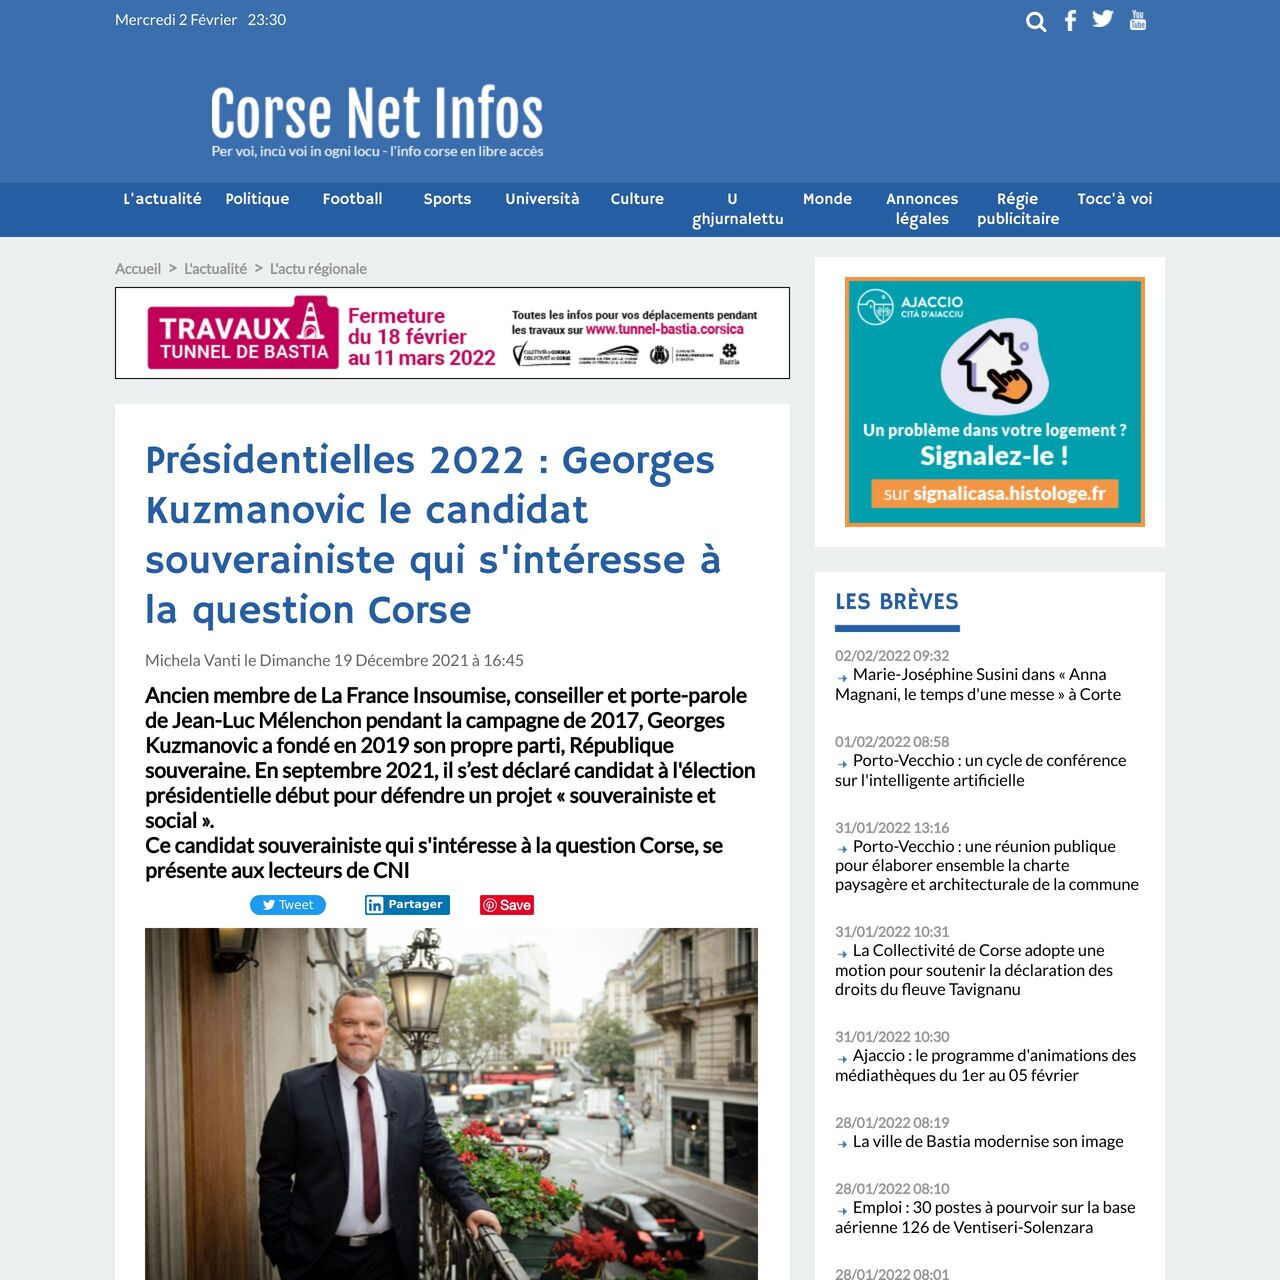 Corse Net Infos – Présidentielles 2022 : Georges Kuzmanovic le candidat souverainiste qui s’intéresse à la question Corse